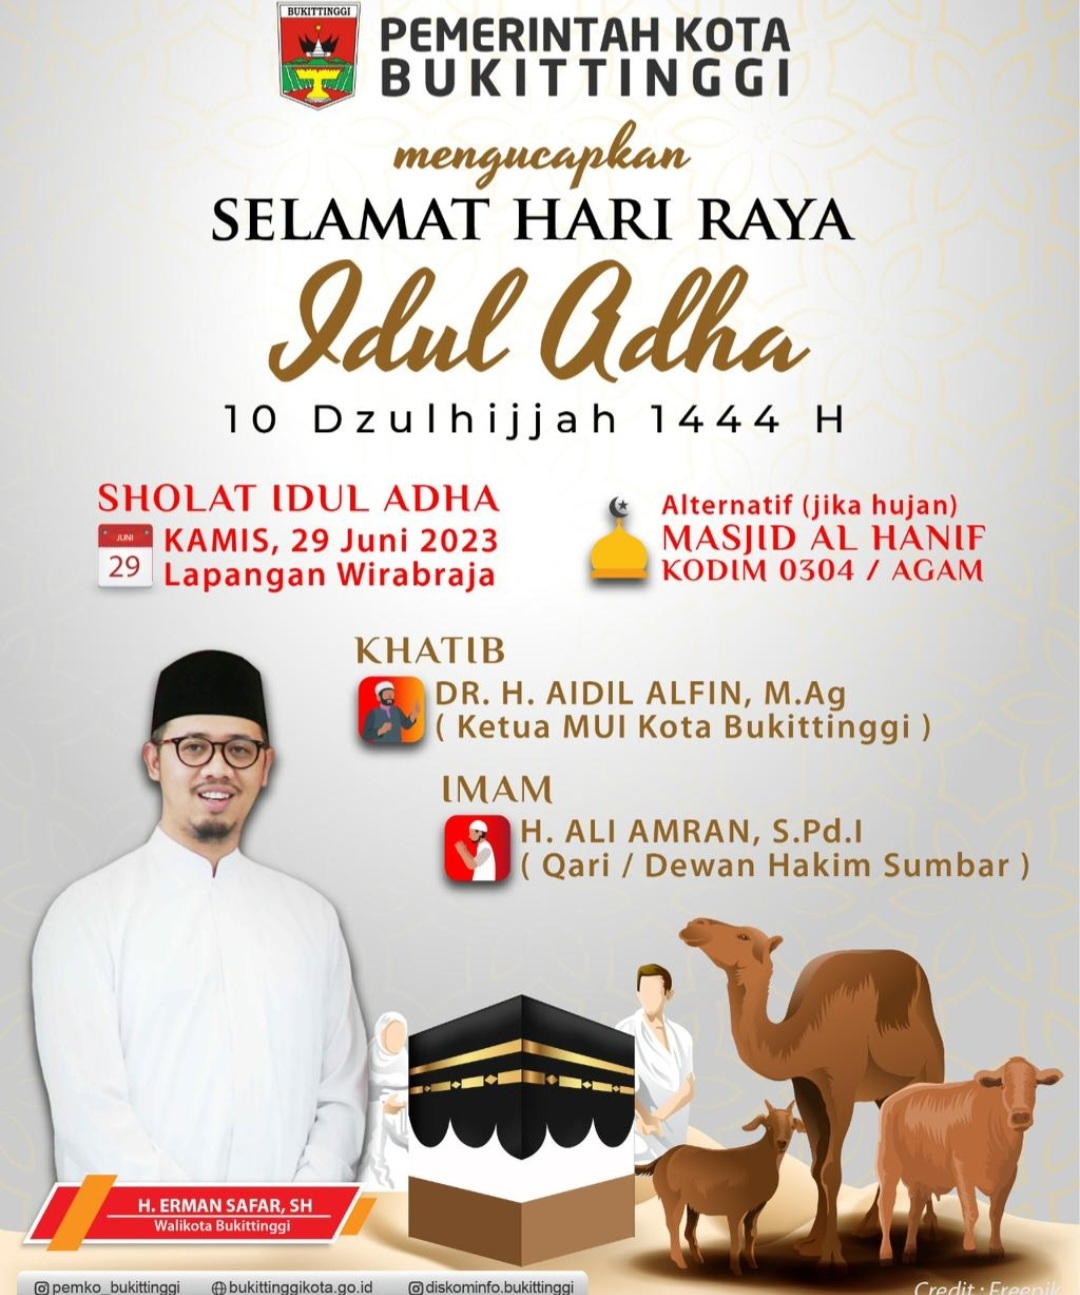 Dr. H. Aidil Alfin, M.Ag, Khatib Shalat Idul Adha 1444 di Bukittinggi